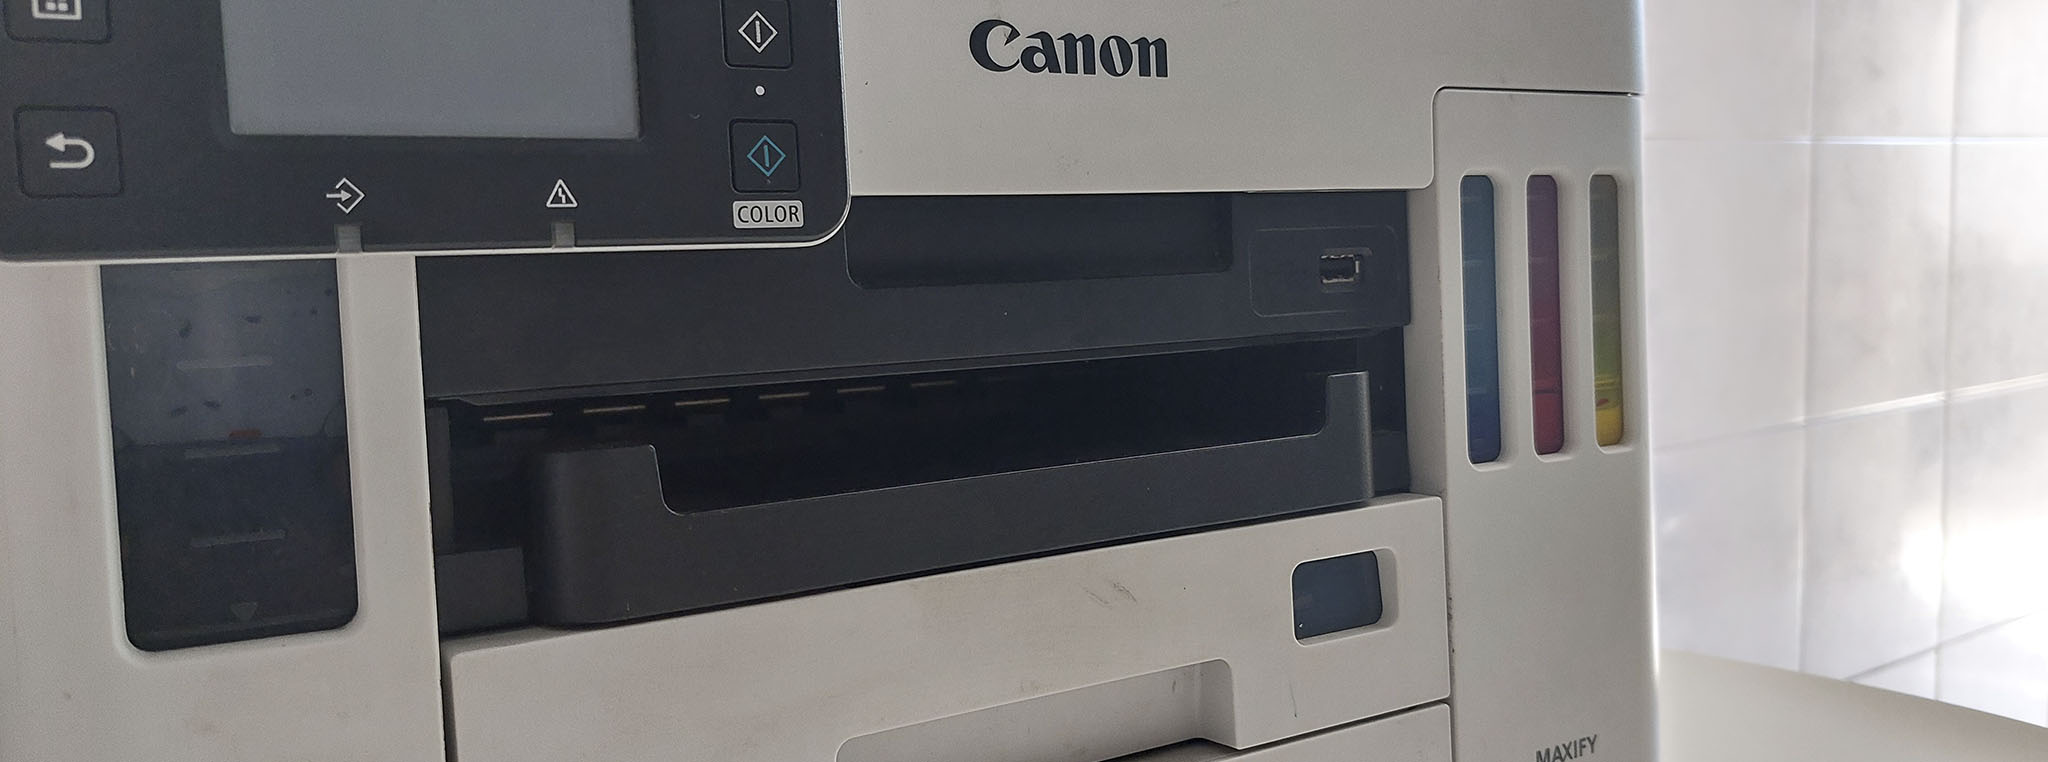 manutencao de impressoras